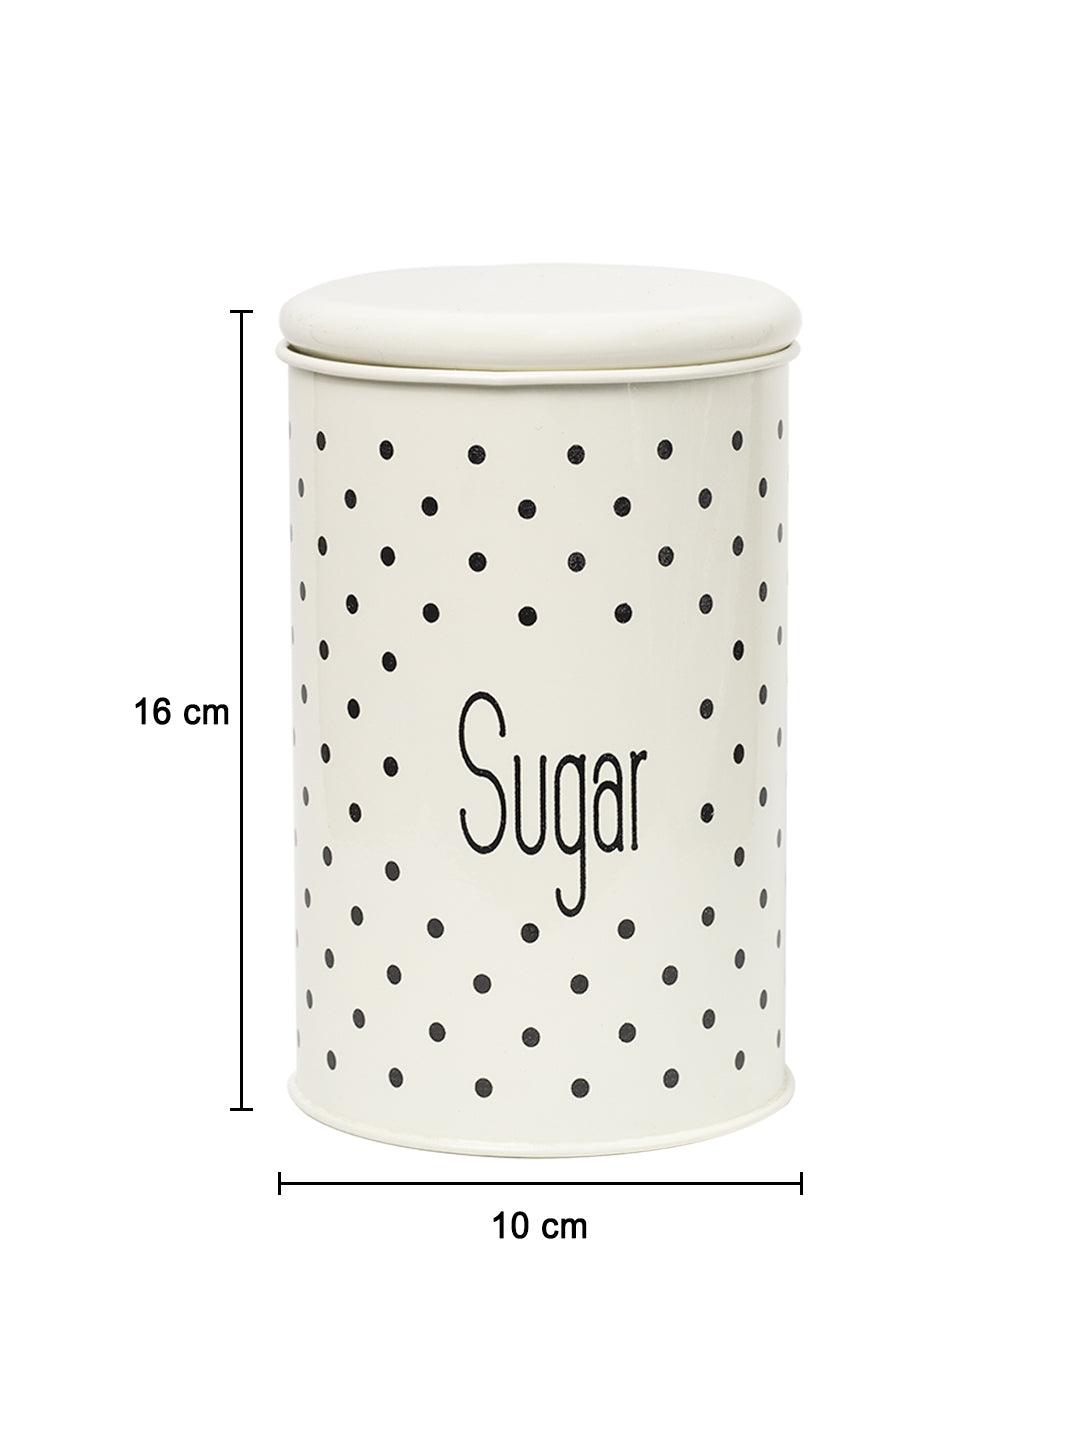 Stylish Ivory Tea & Sugar Jar (Each 1000 Ml) - MARKET 99